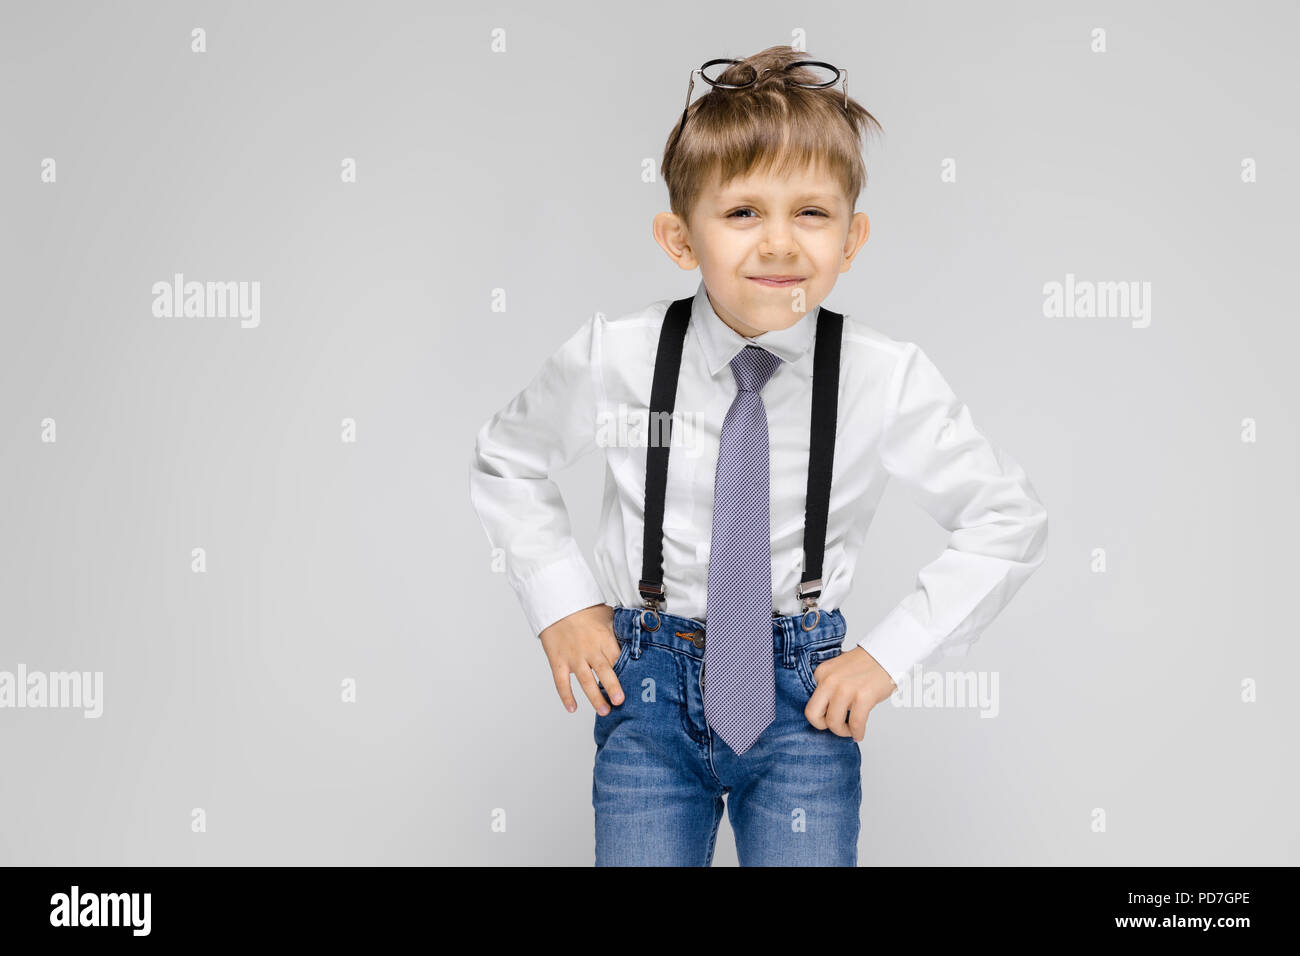 Un charmant garçon dans une chemise blanche, bretelles, une cravate et des  jeans se dresse sur un fond gris. Verres sur la tête Photo Stock - Alamy